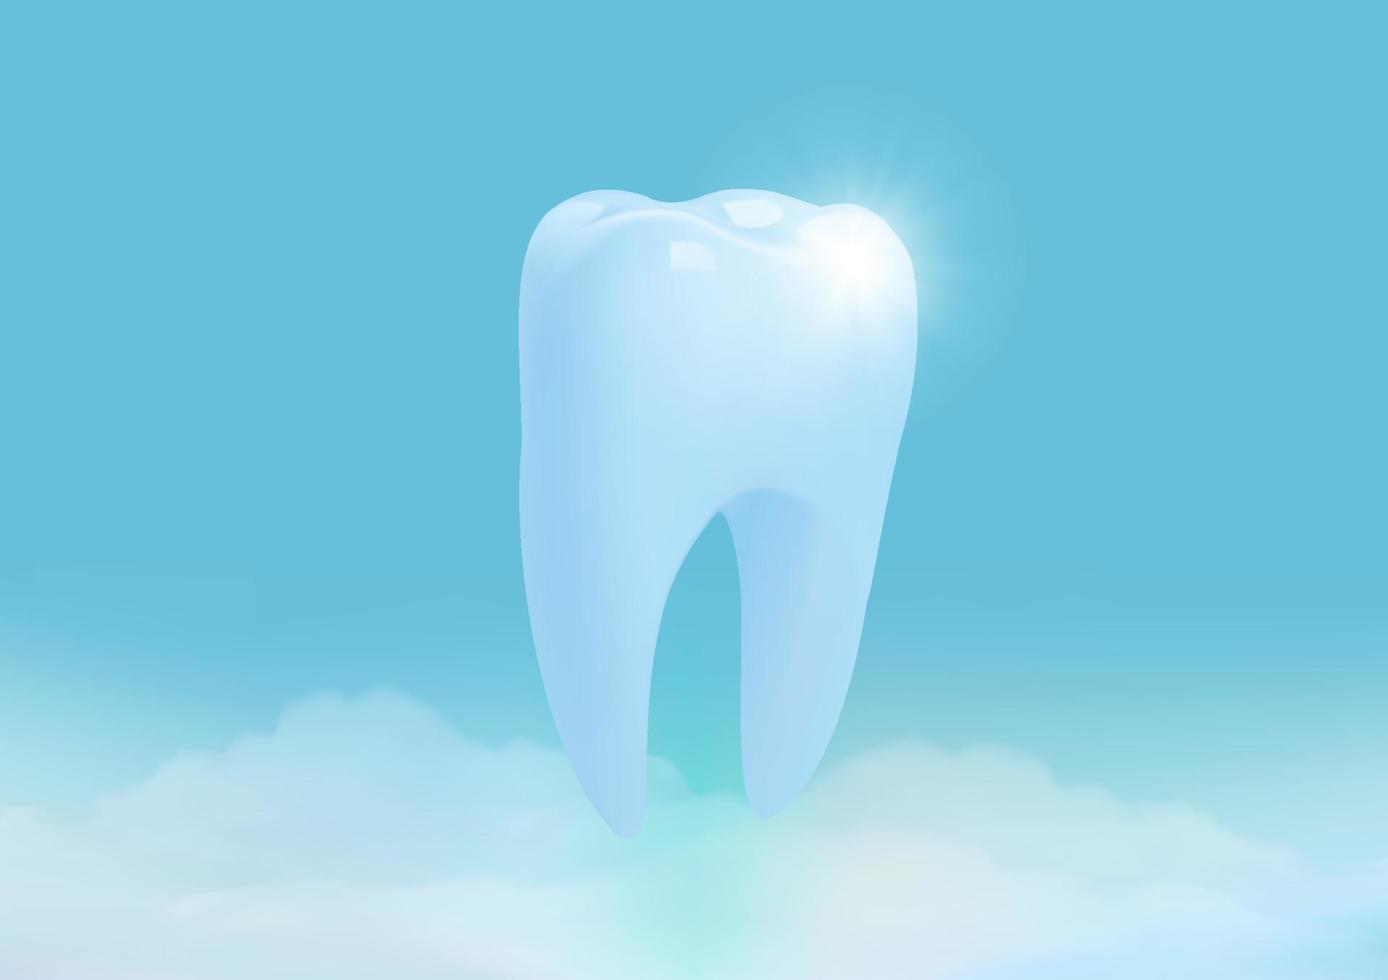 gezonde tand met wolk op blauwe achtergrond, tanden bleken concept, illustratie vector